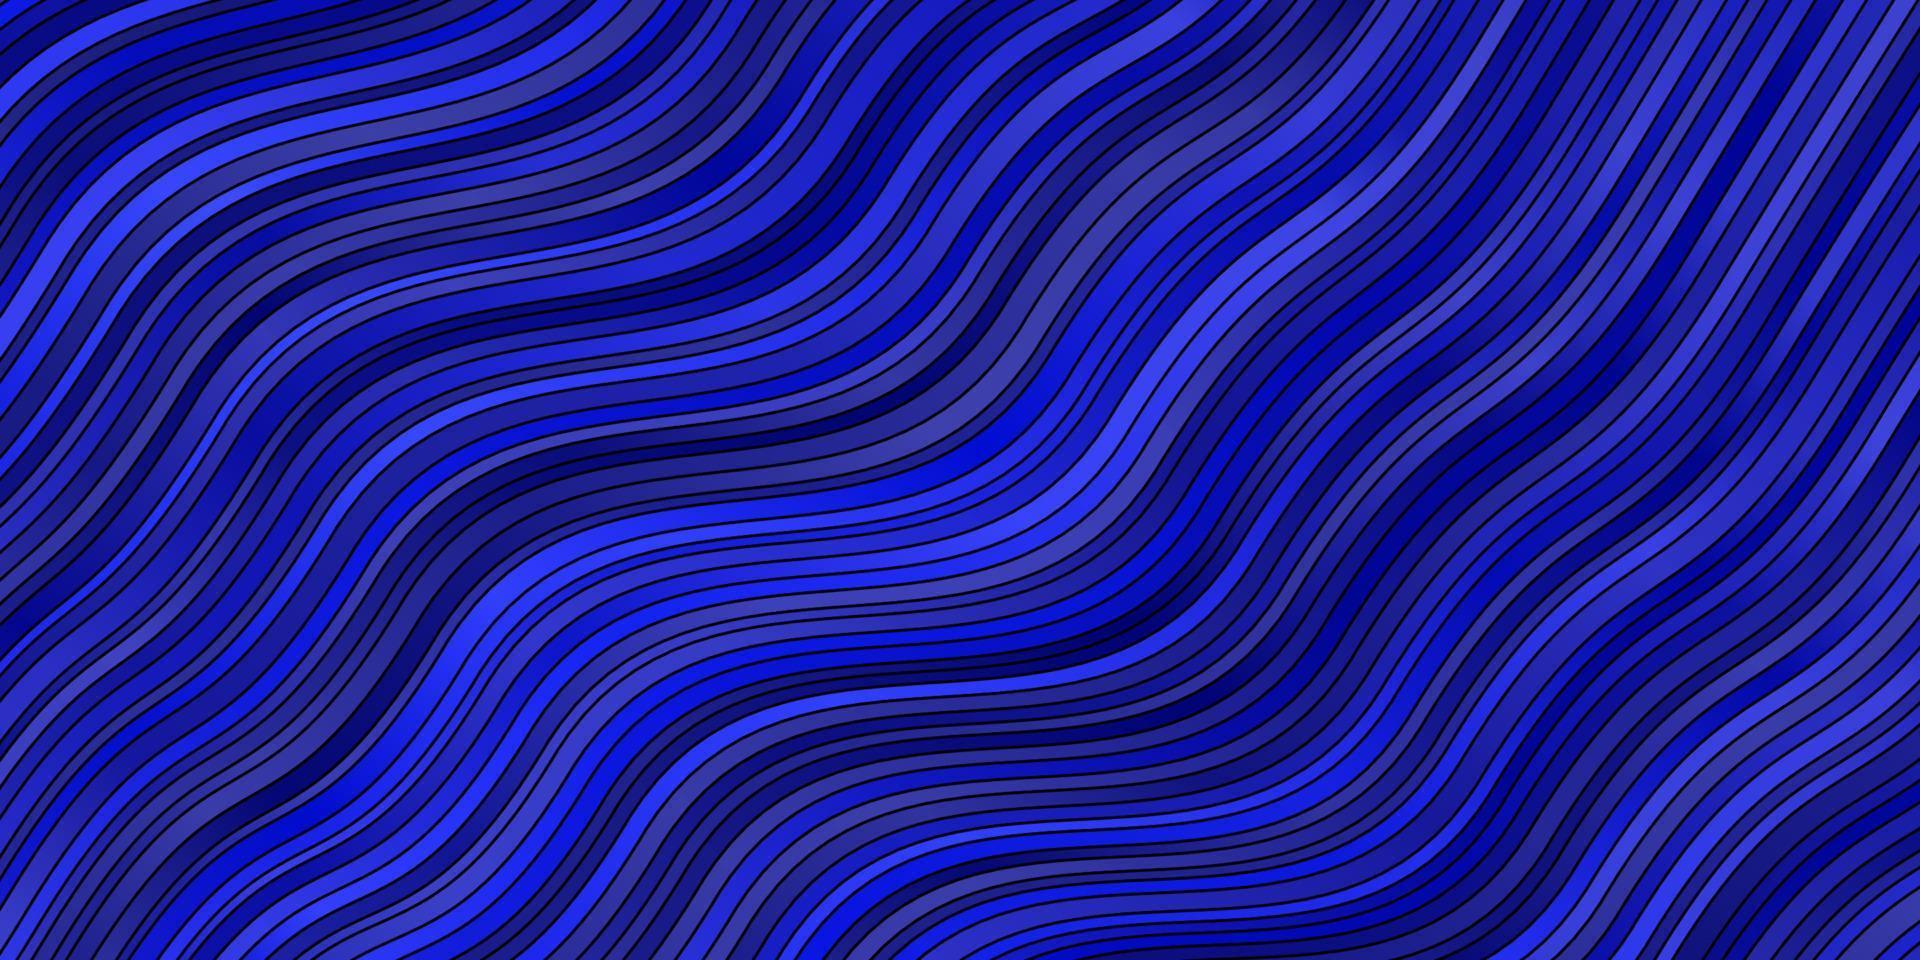 textura de vector azul oscuro con curvas.